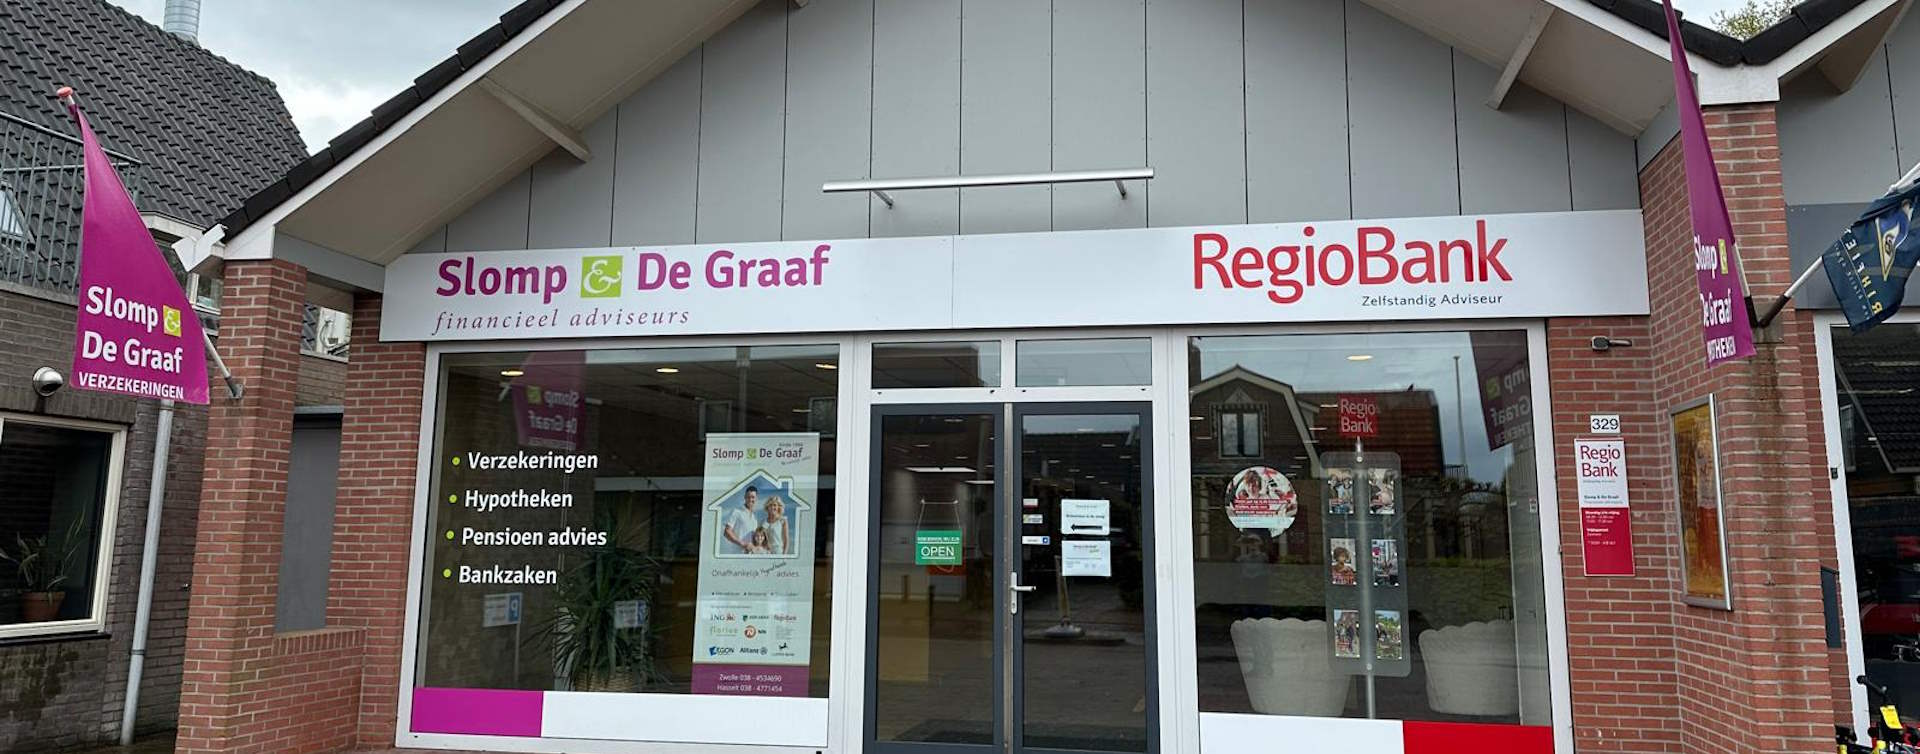 De omgeving van Slomp & De Graaf financieel adviseurs, RegioBank in Nieuwleusen